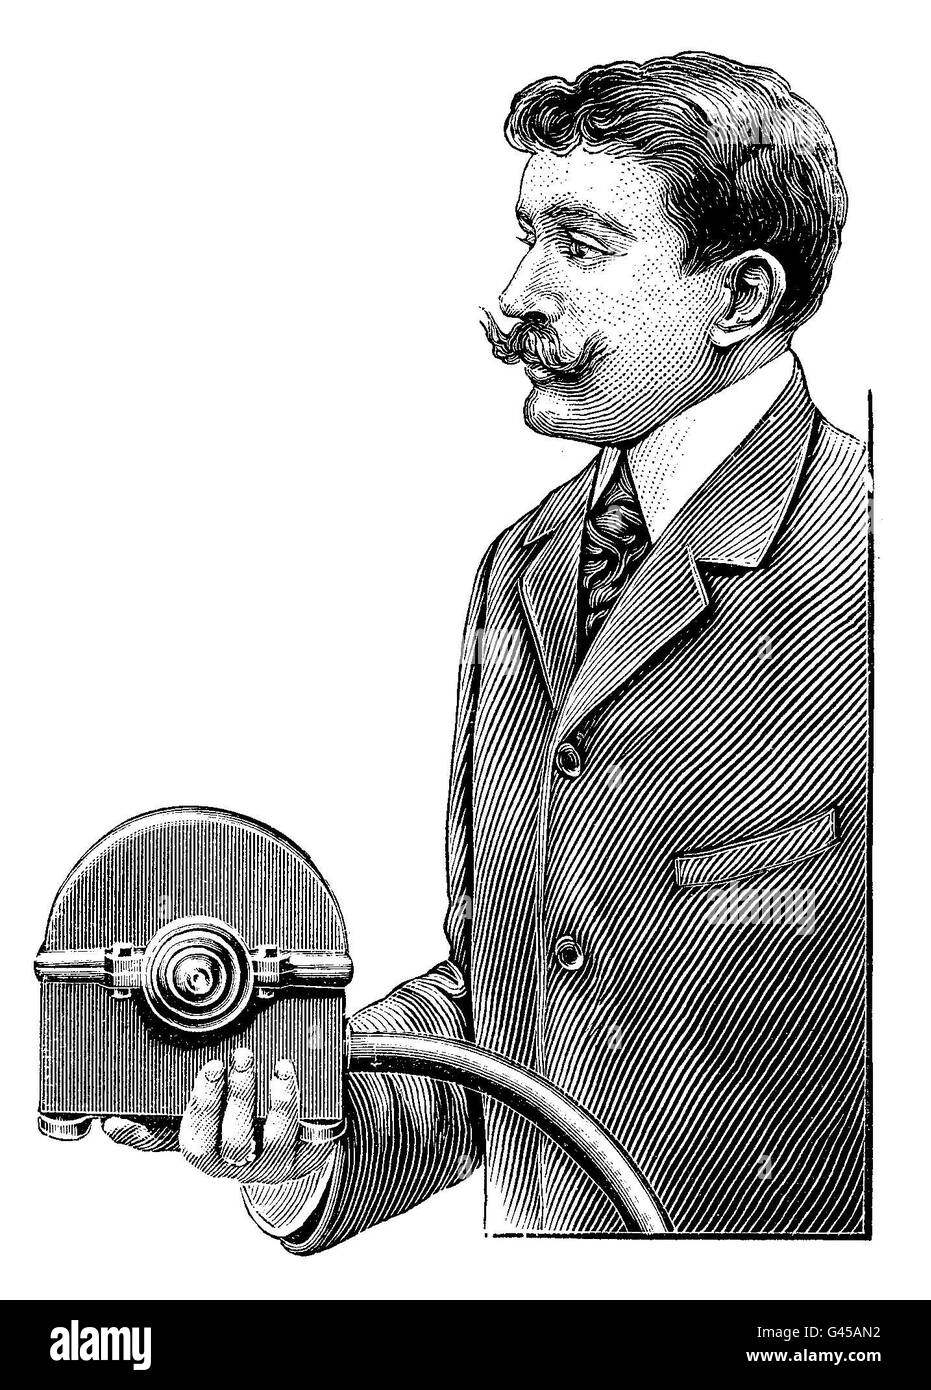 Gut gekleidet mit Lenker Schnurrbart - vielleicht ein Erfinder - Gemtleman präsentiert eine kleine Hydraulikturbine Stockfoto